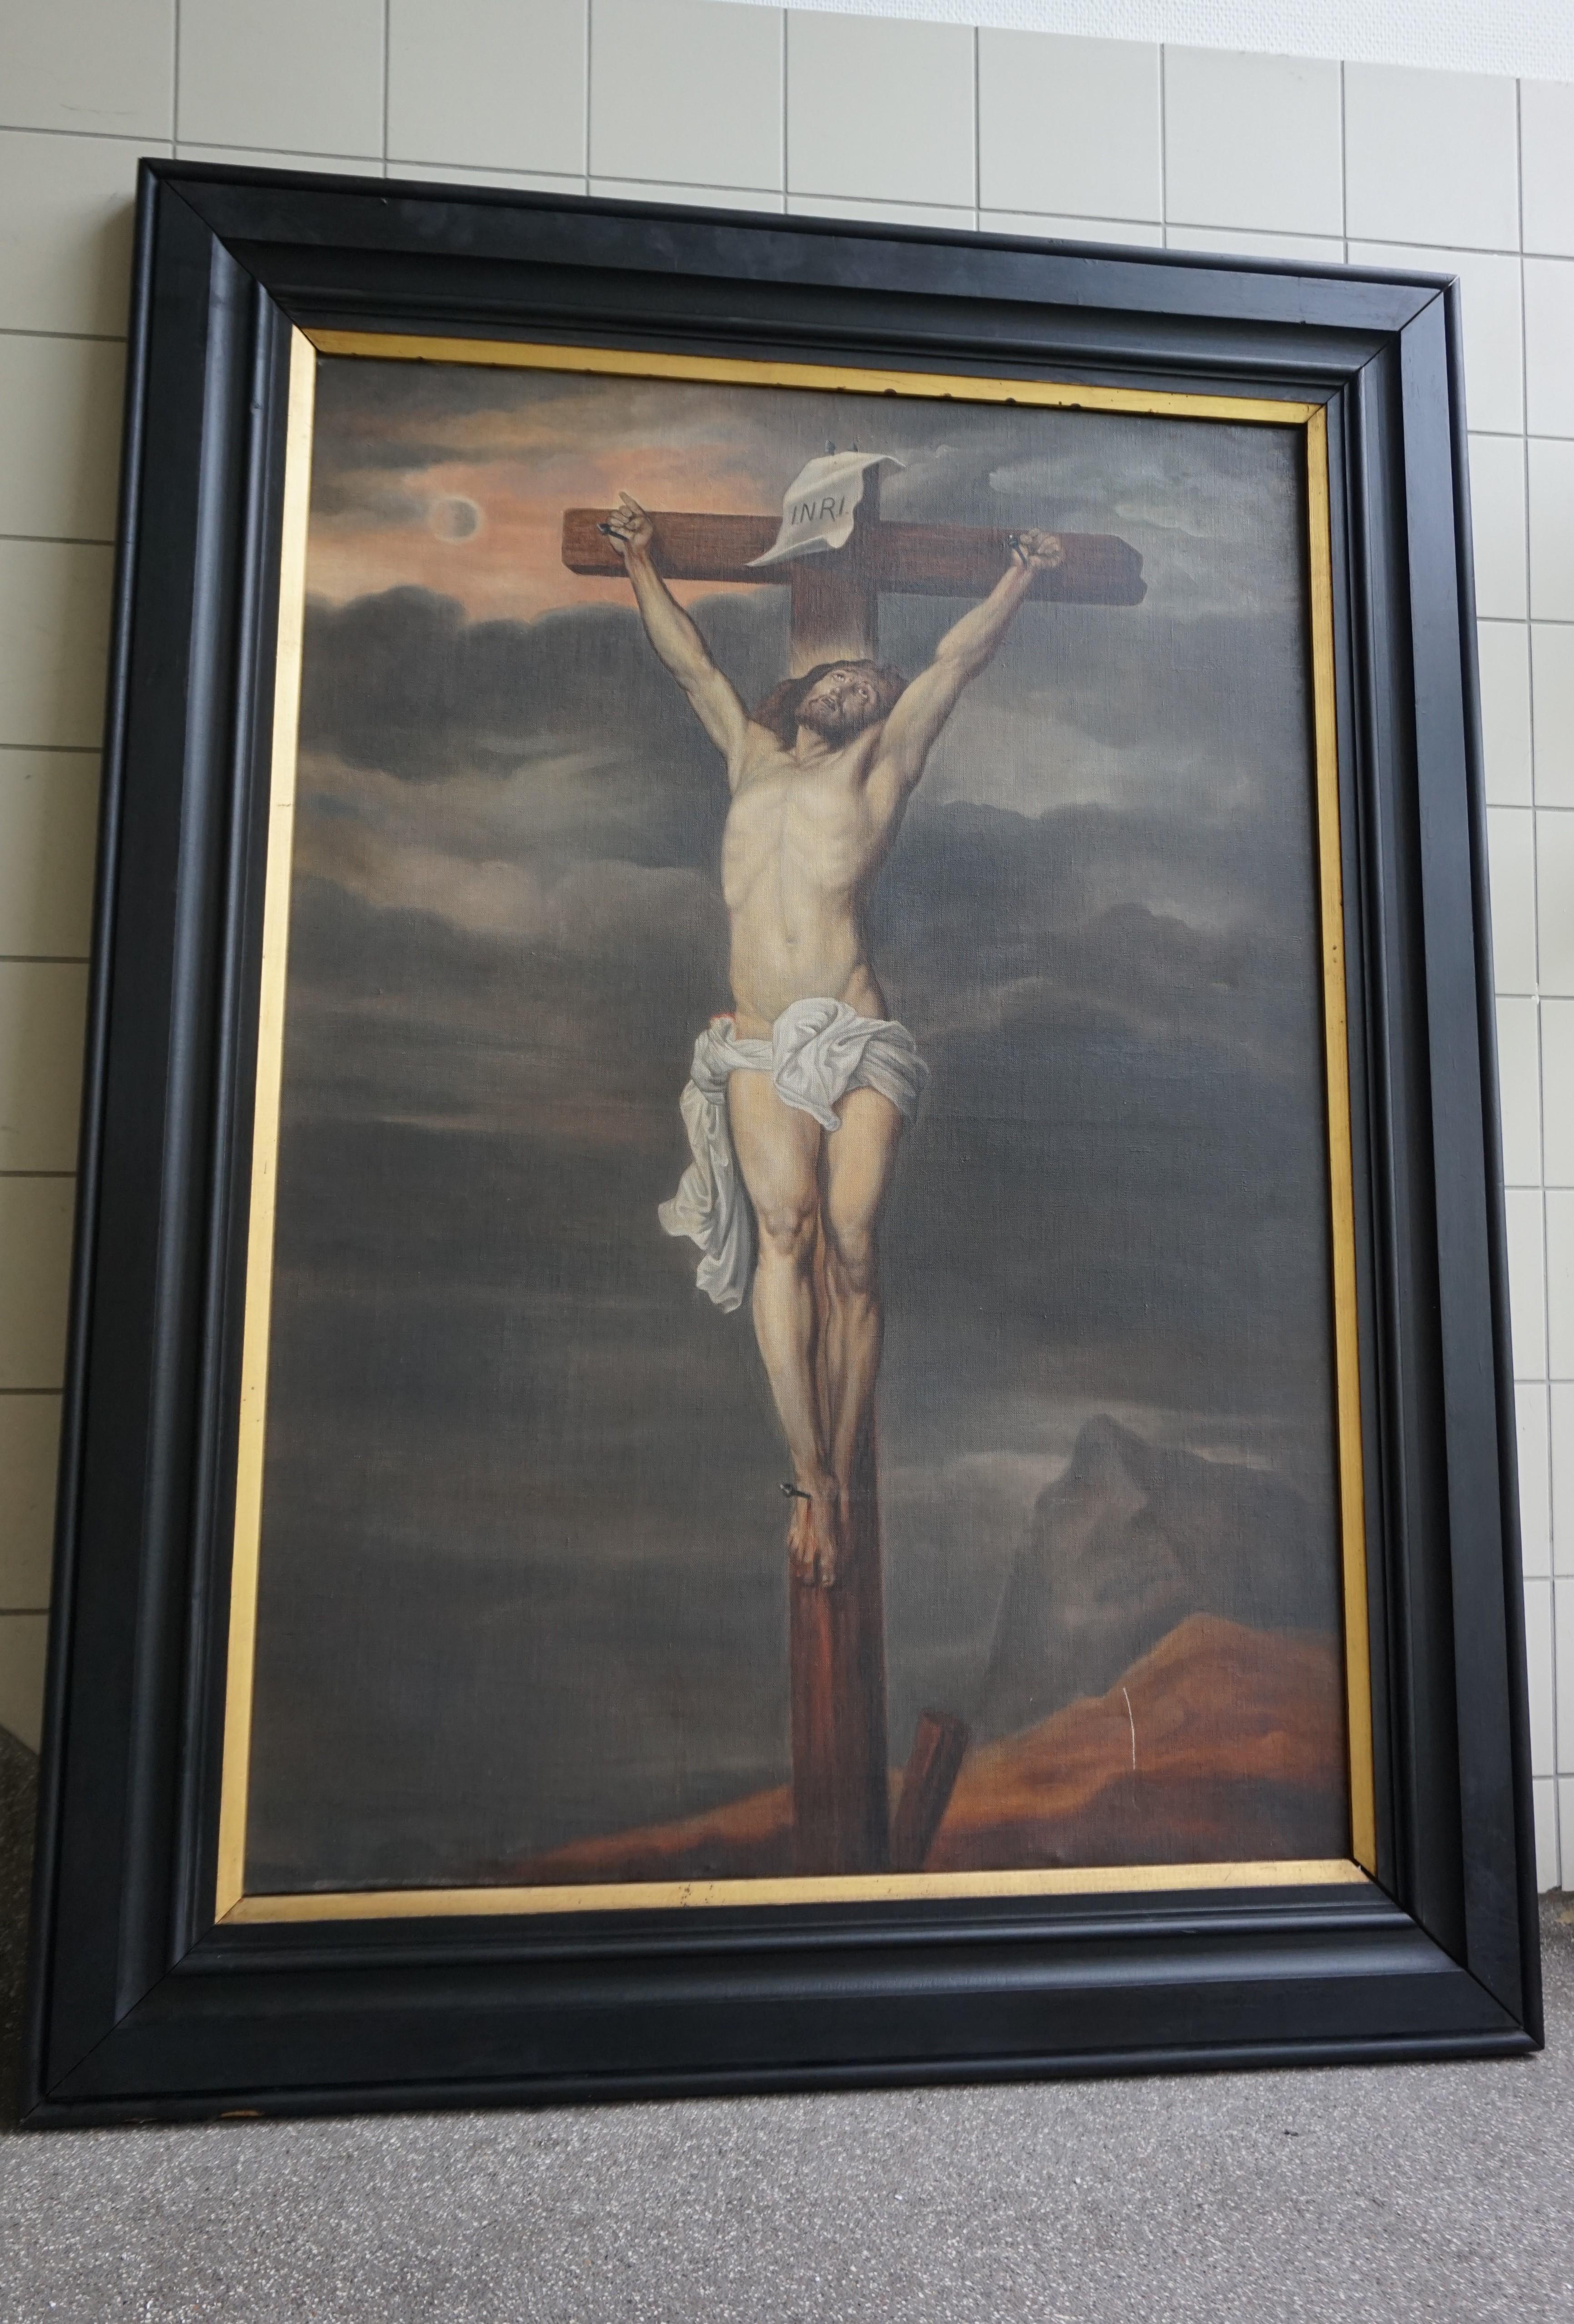 Ein großartiges Werk der religiösen Kunst.

Dieses eindrucksvolle und große Gemälde von Christus am Kreuz ist aus mehreren Gründen ein beeindruckender Anblick. Der unglaublich gut gemalte, bleiche Körper Christi hebt sich stark von dem dunklen und